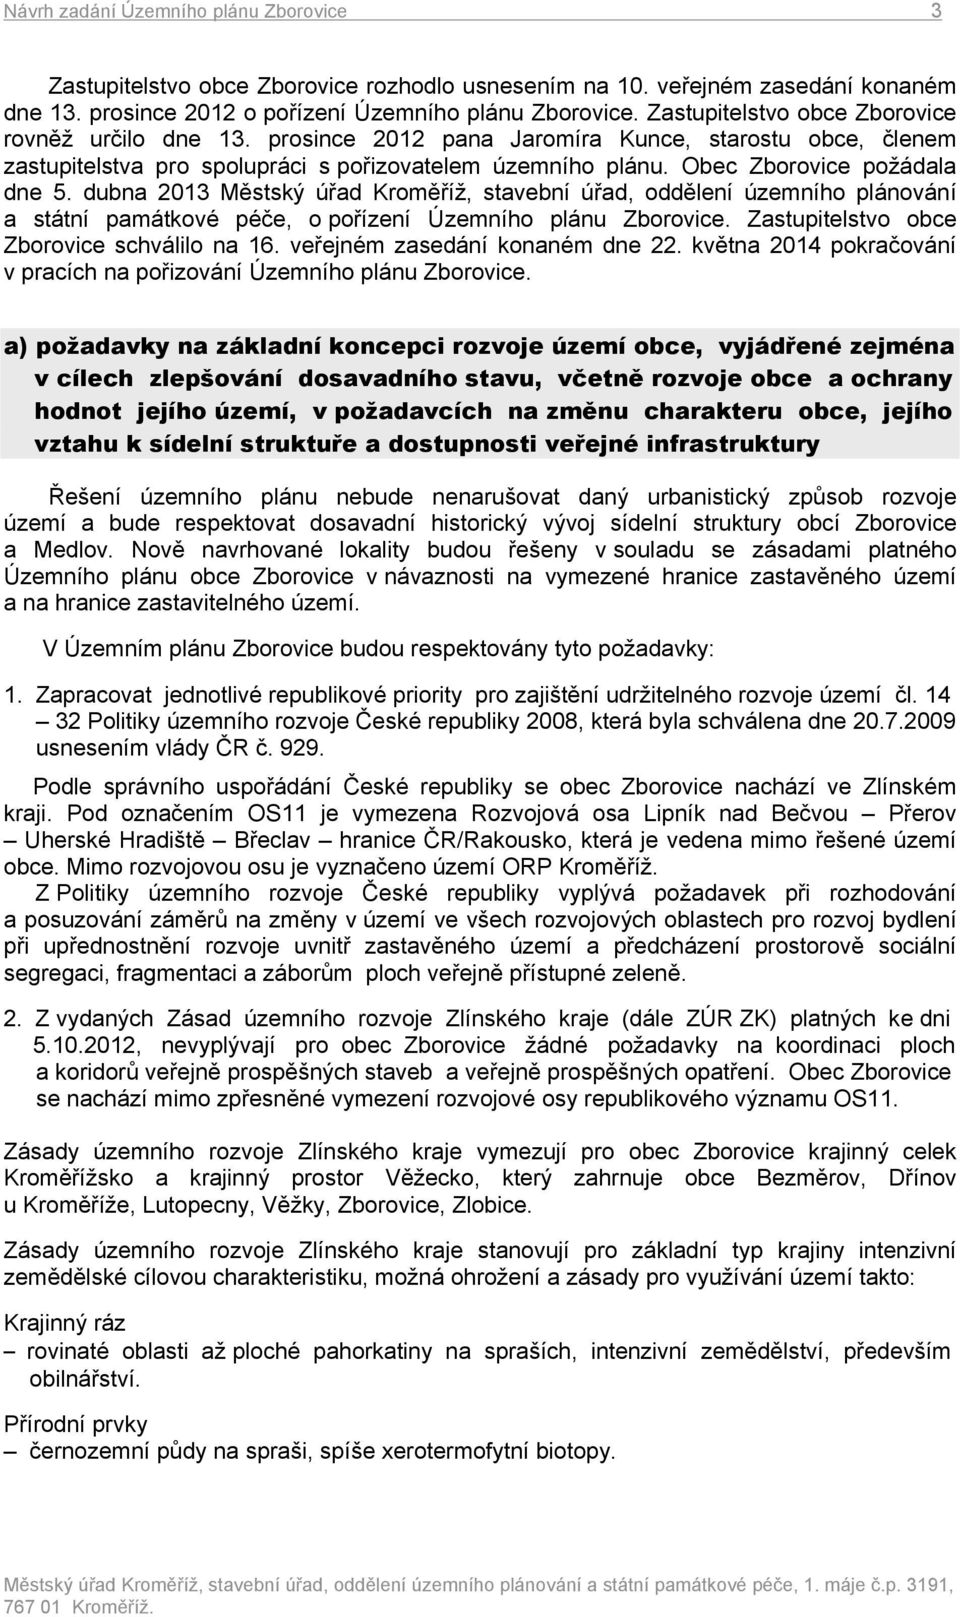 Obec Zborovice požádala dne 5. dubna 2013 Městský úřad Kroměříž, stavební úřad, oddělení územního plánování a státní památkové péče, o pořízení Územního plánu Zborovice.